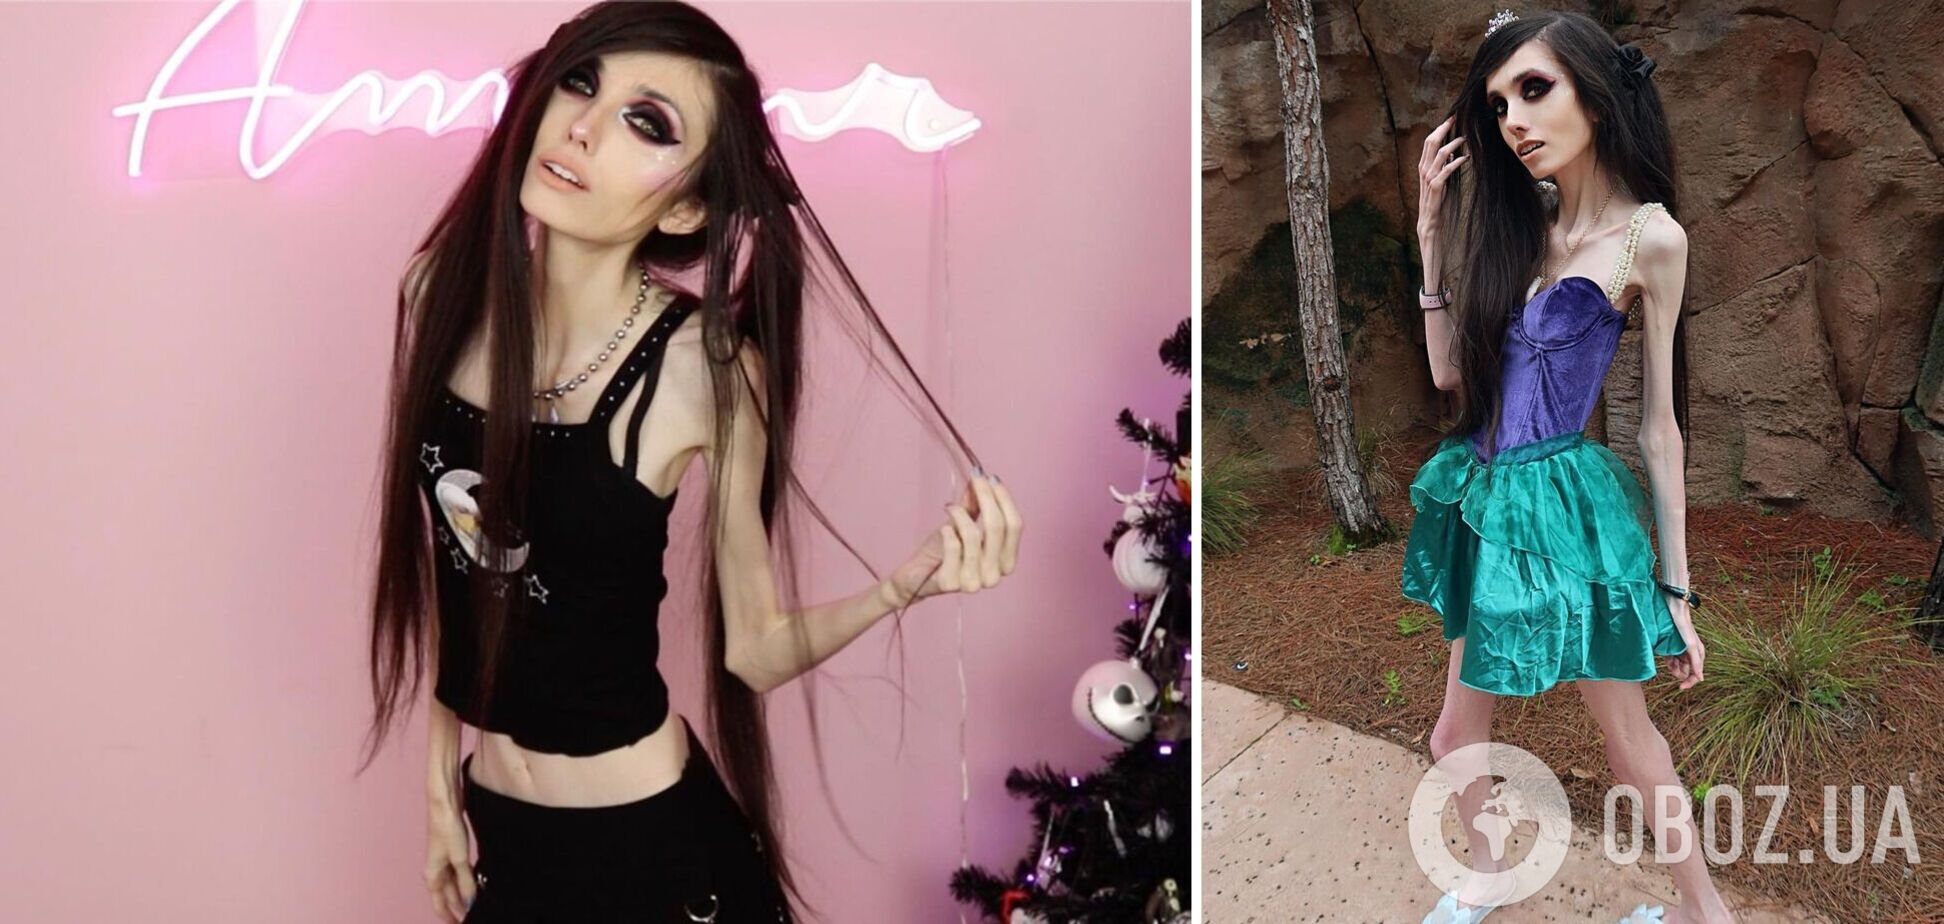 Звезда TikTok, страдающая анорексией, смутила поклонников новыми видео: как выглядит 29-летняя девушка